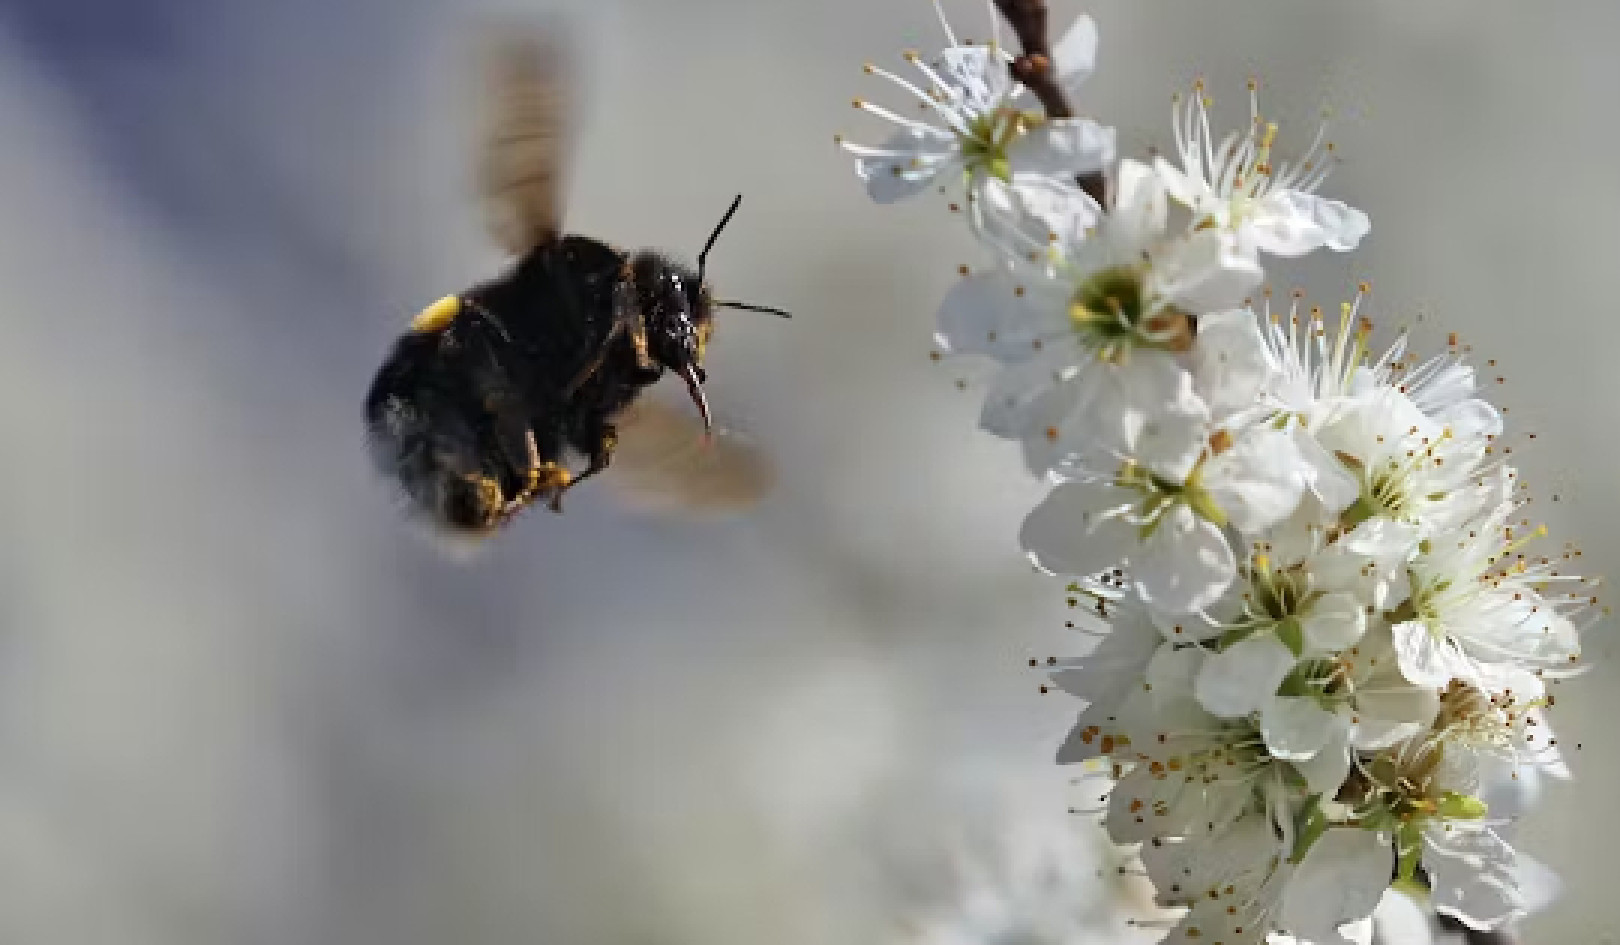 A méhek titkainak feltárása: hogyan érzékelik, navigálnak és boldogulnak